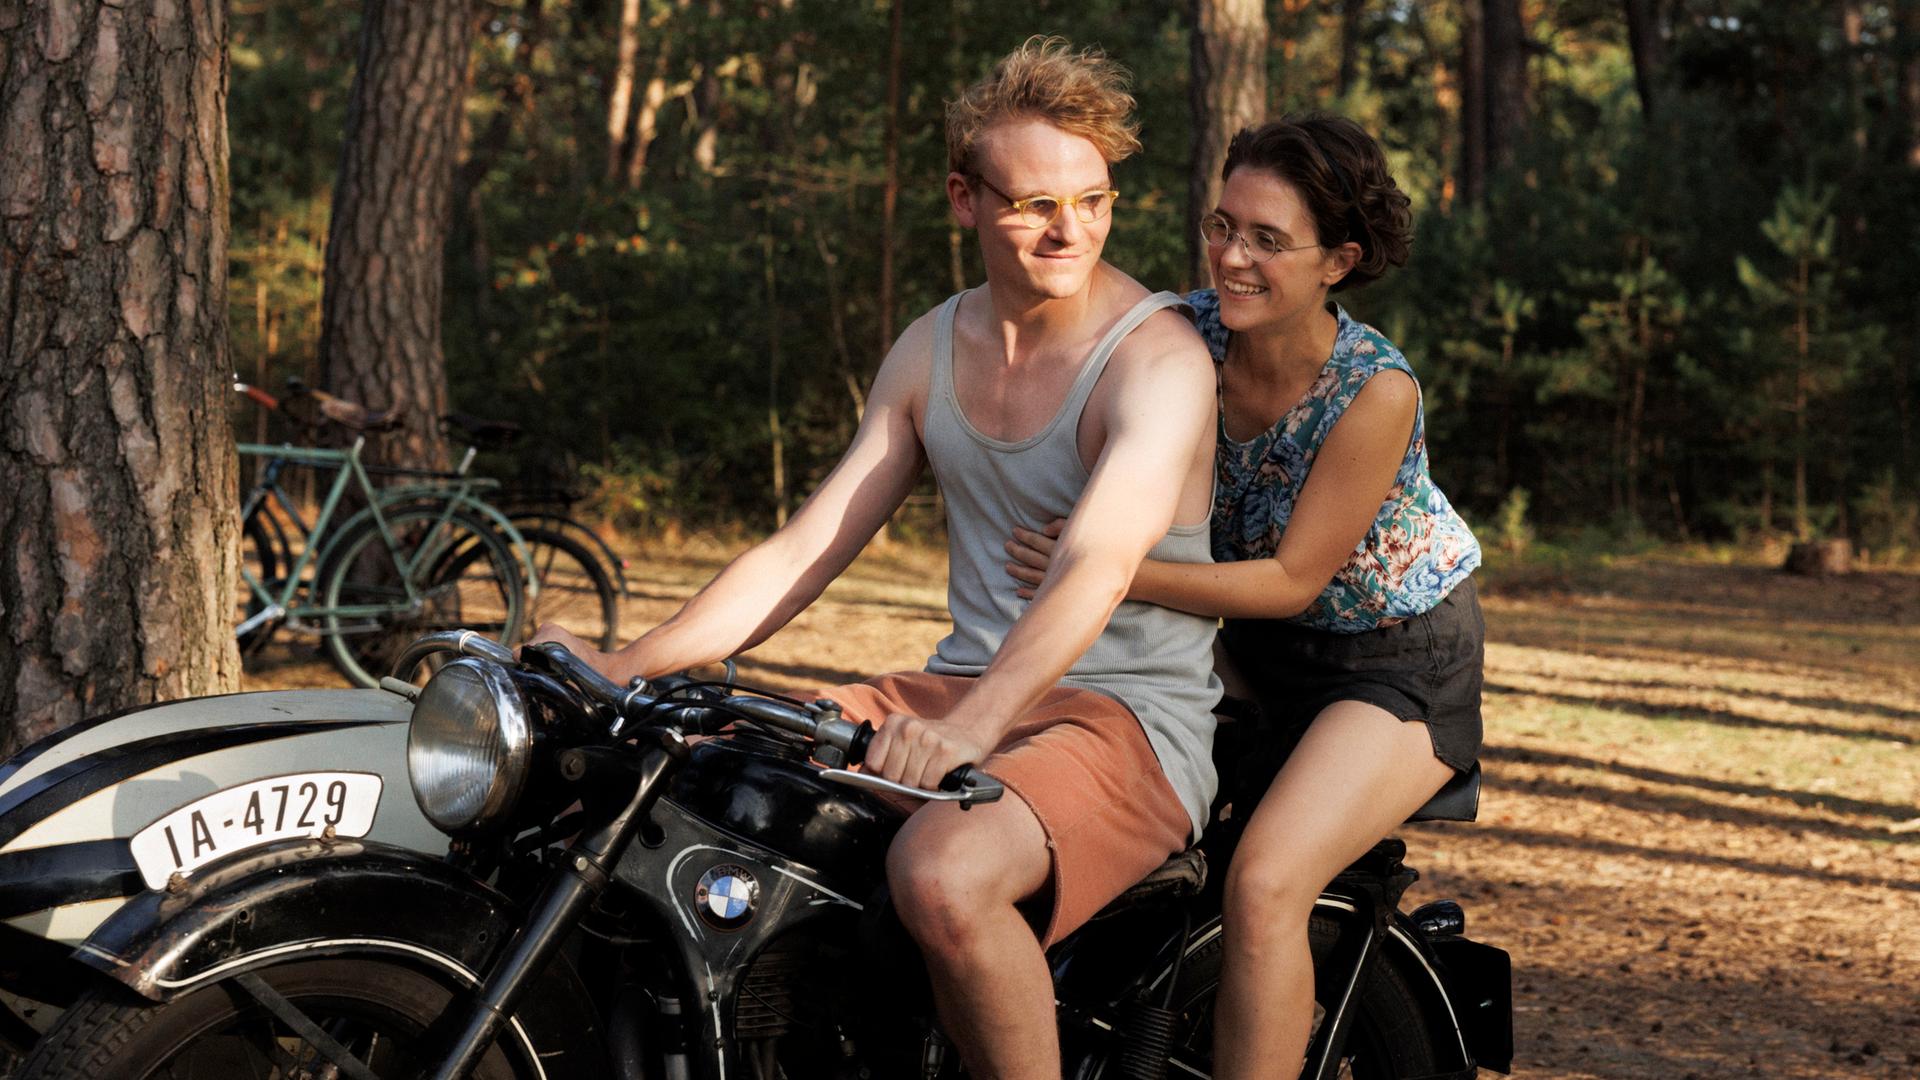 Filmstill aus "In Liebe Eure Hilde": Hans (Johannes Hegemann) und Hilde (Liv Lisa Fries) auf dem Motorrad.